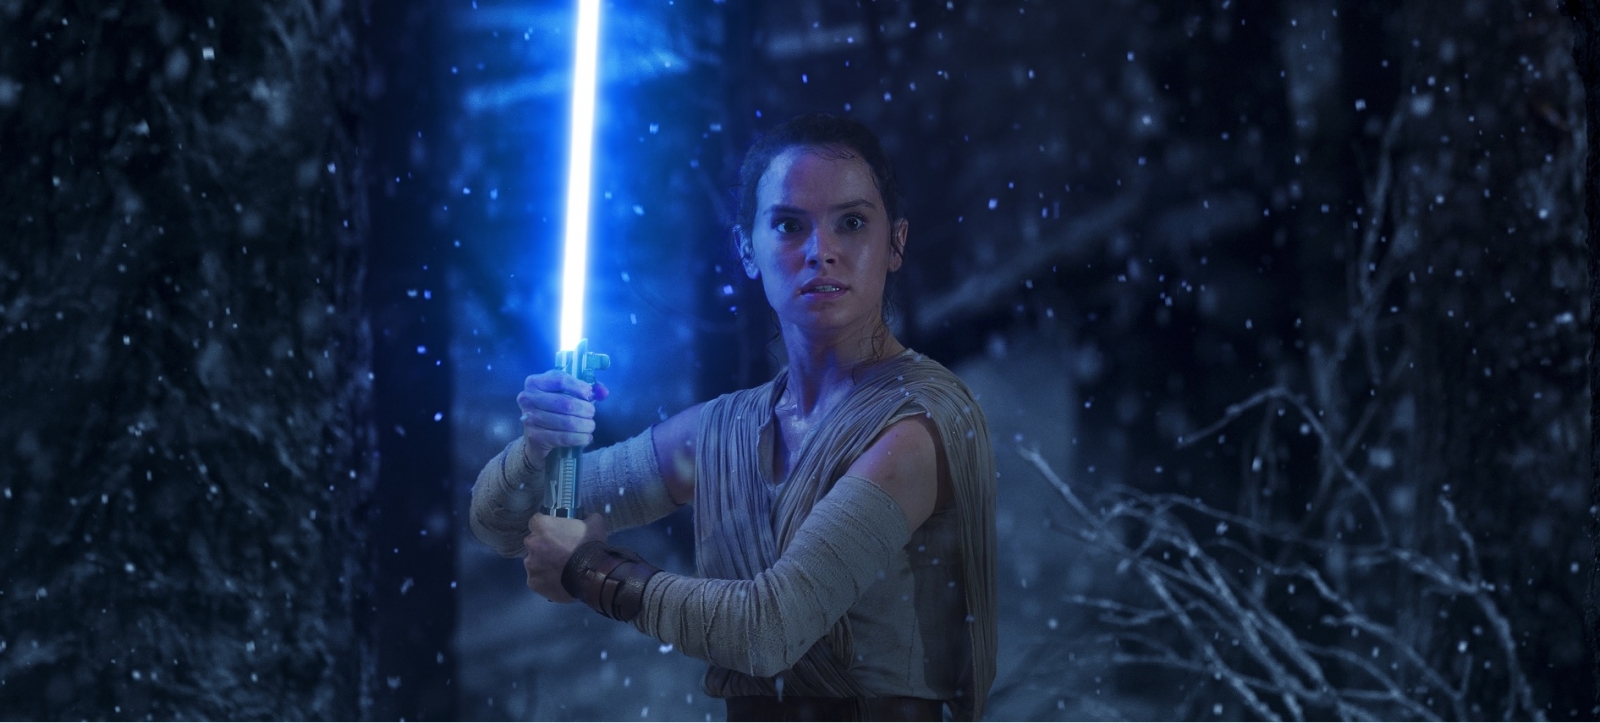 the force awakens full movie youtube